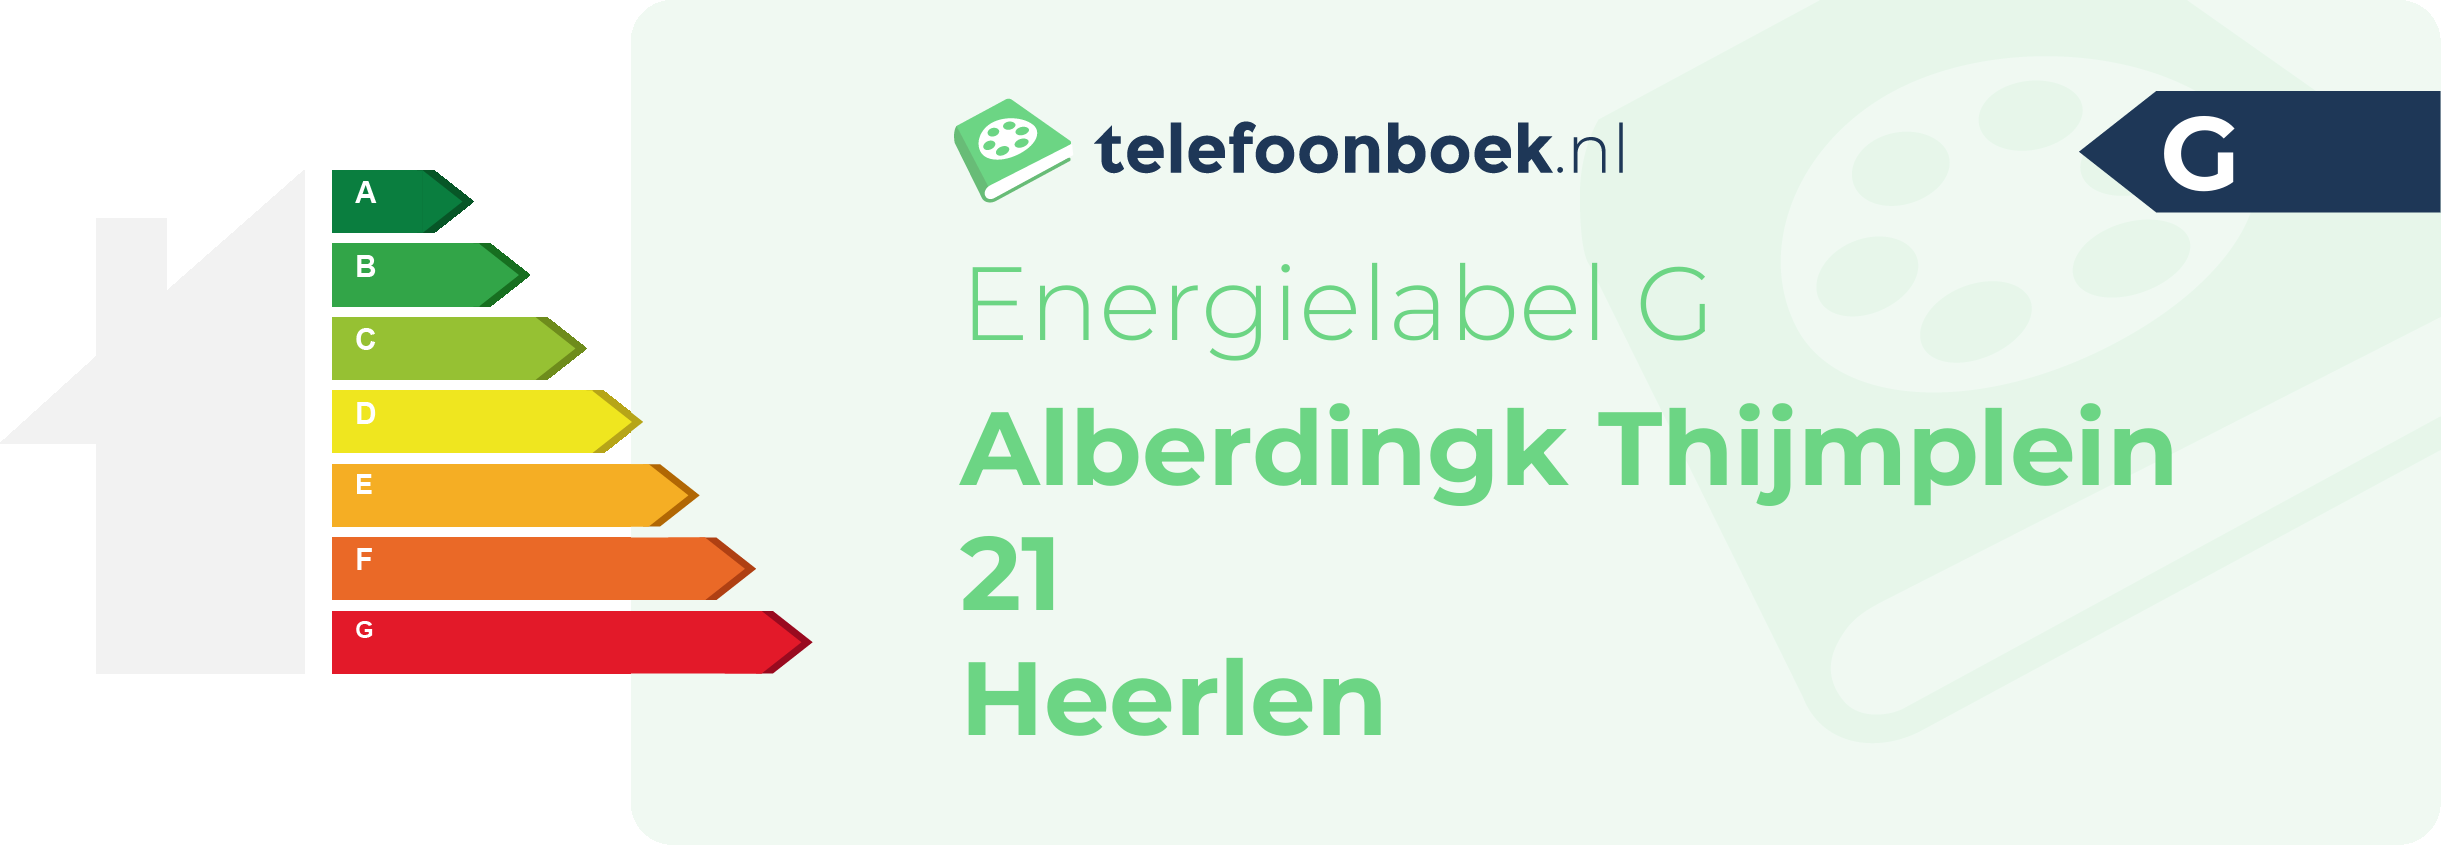 Energielabel Alberdingk Thijmplein 21 Heerlen